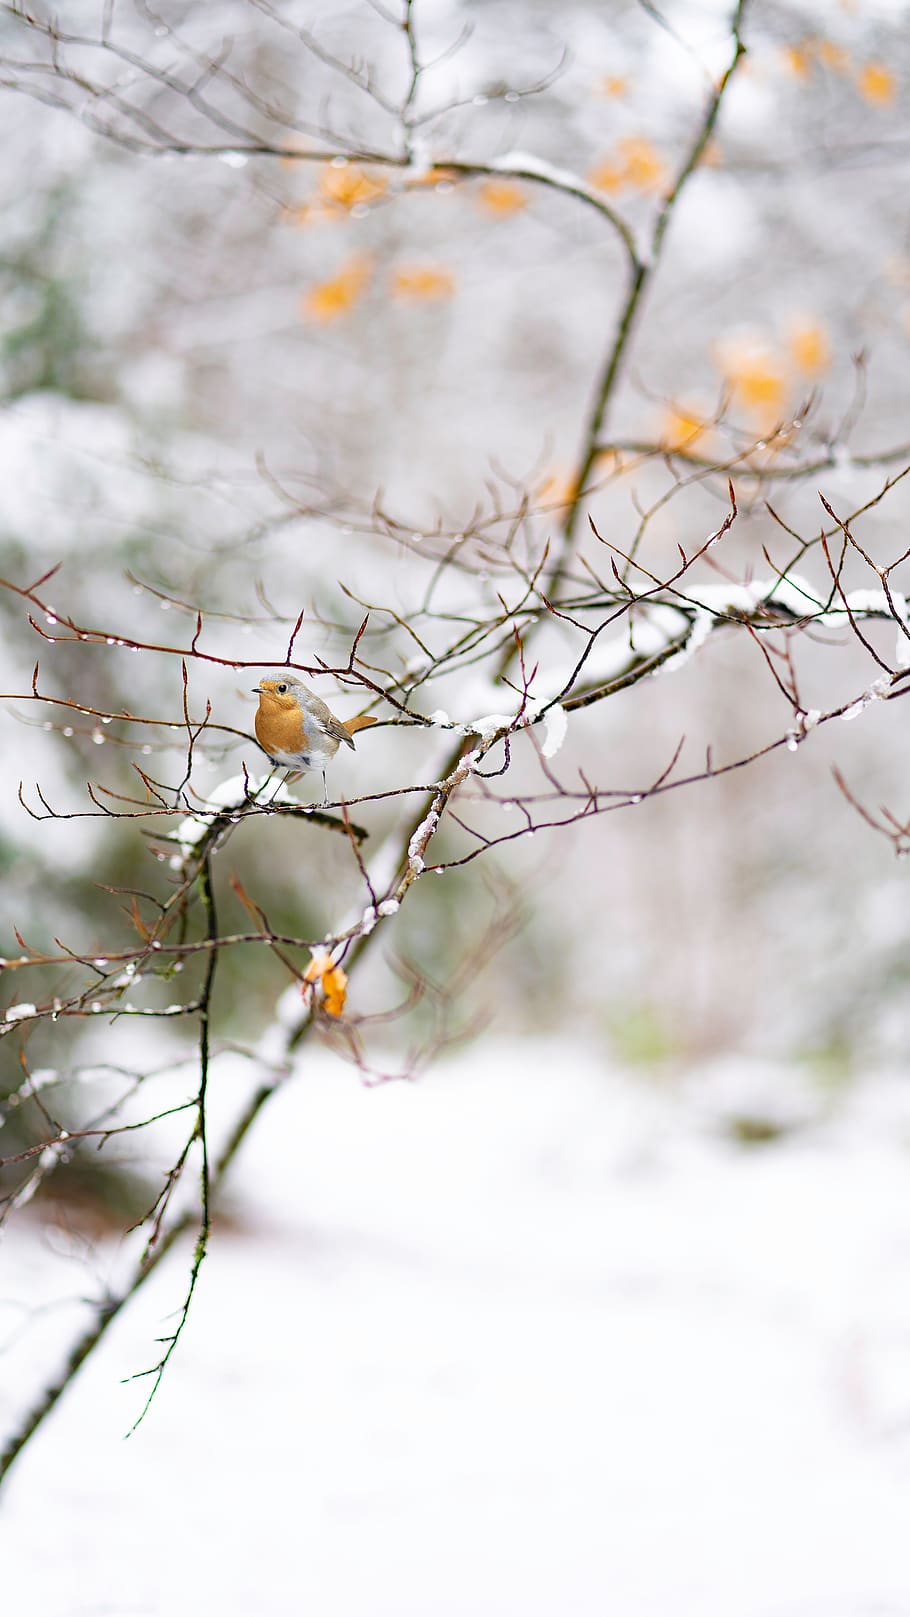 neve, inverno, natureza, frio, ao ar livre, de inverno, árvore, plantar, foco em primeiro plano, ramo